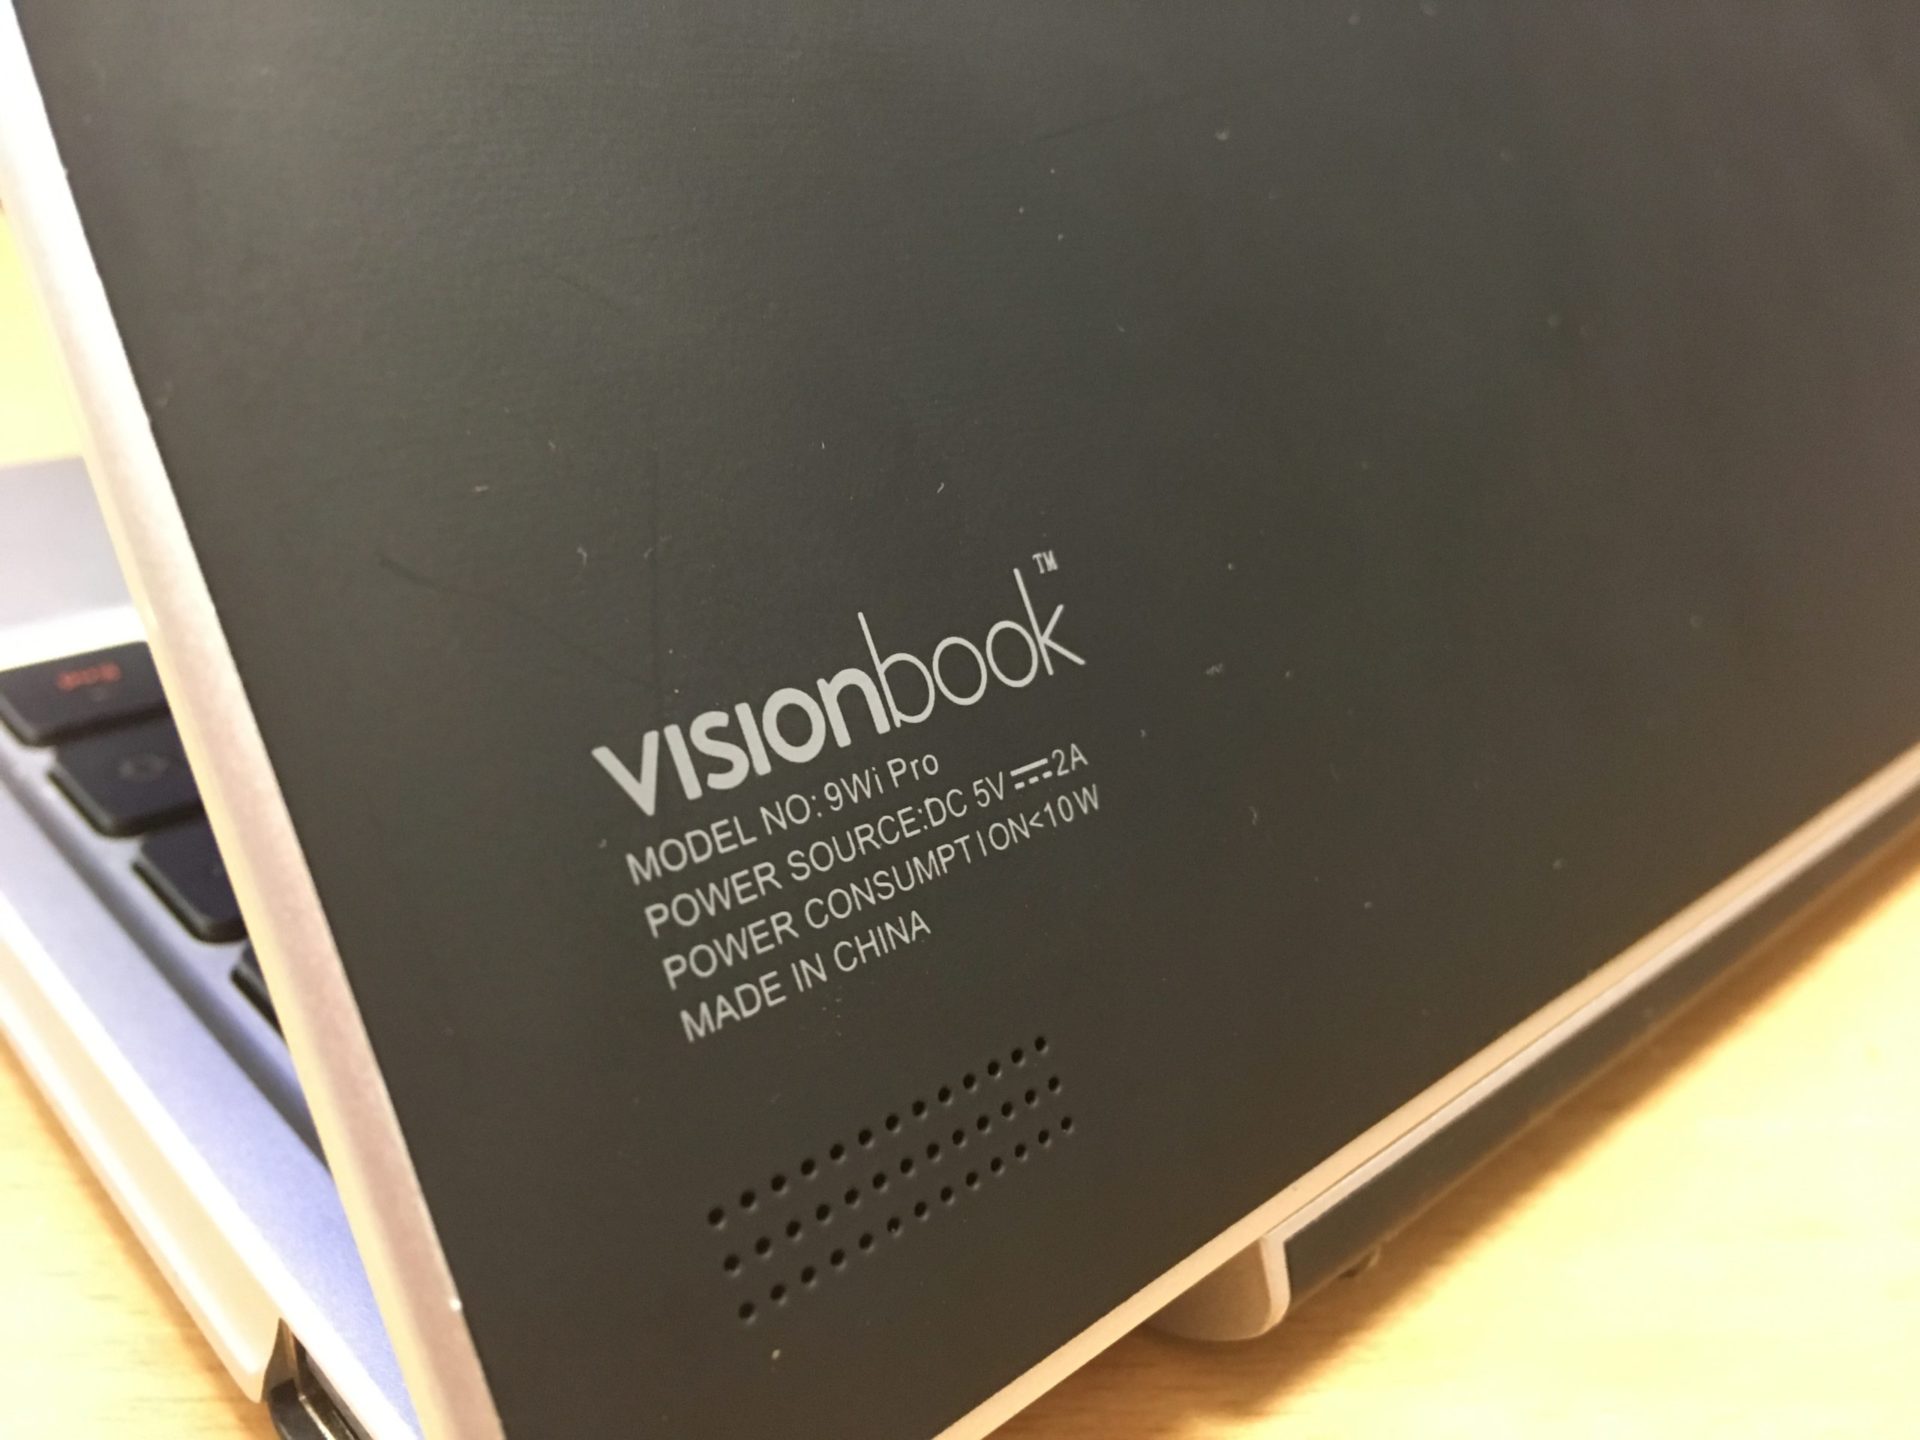 Visionbook 9Wi Pro